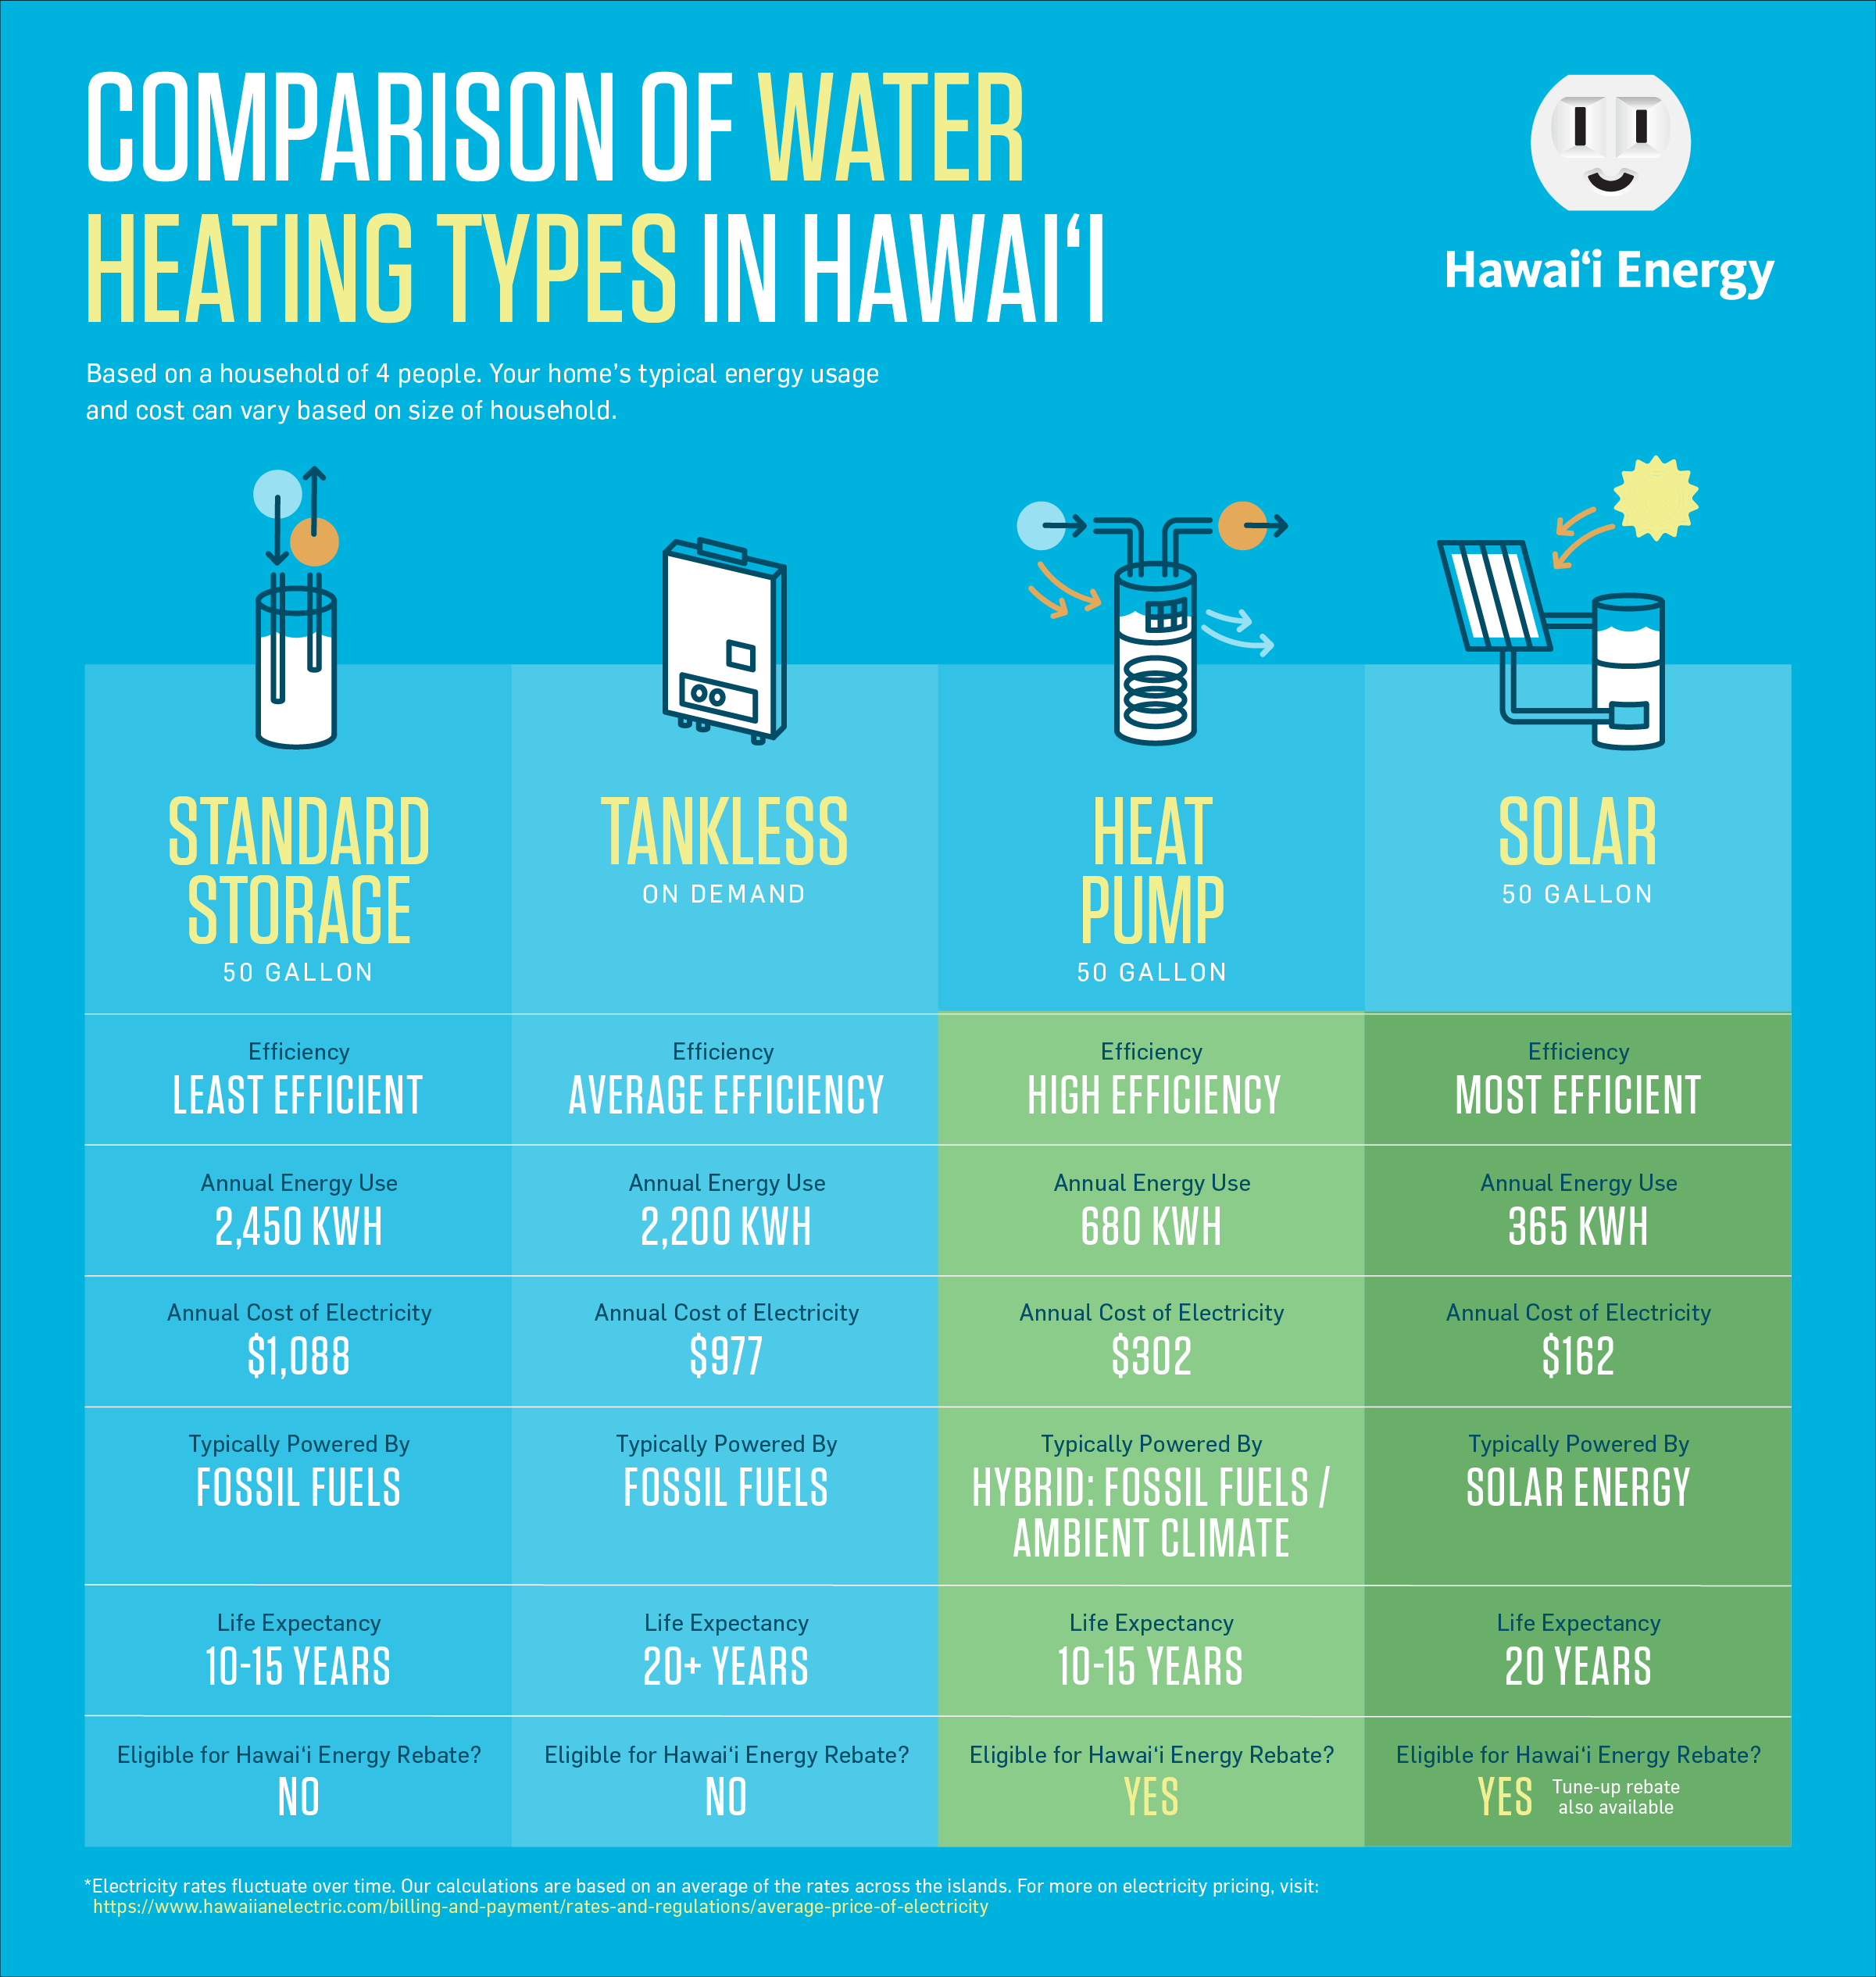 Choosing Electric Water Heaters: Tankless vs Heat Pump?